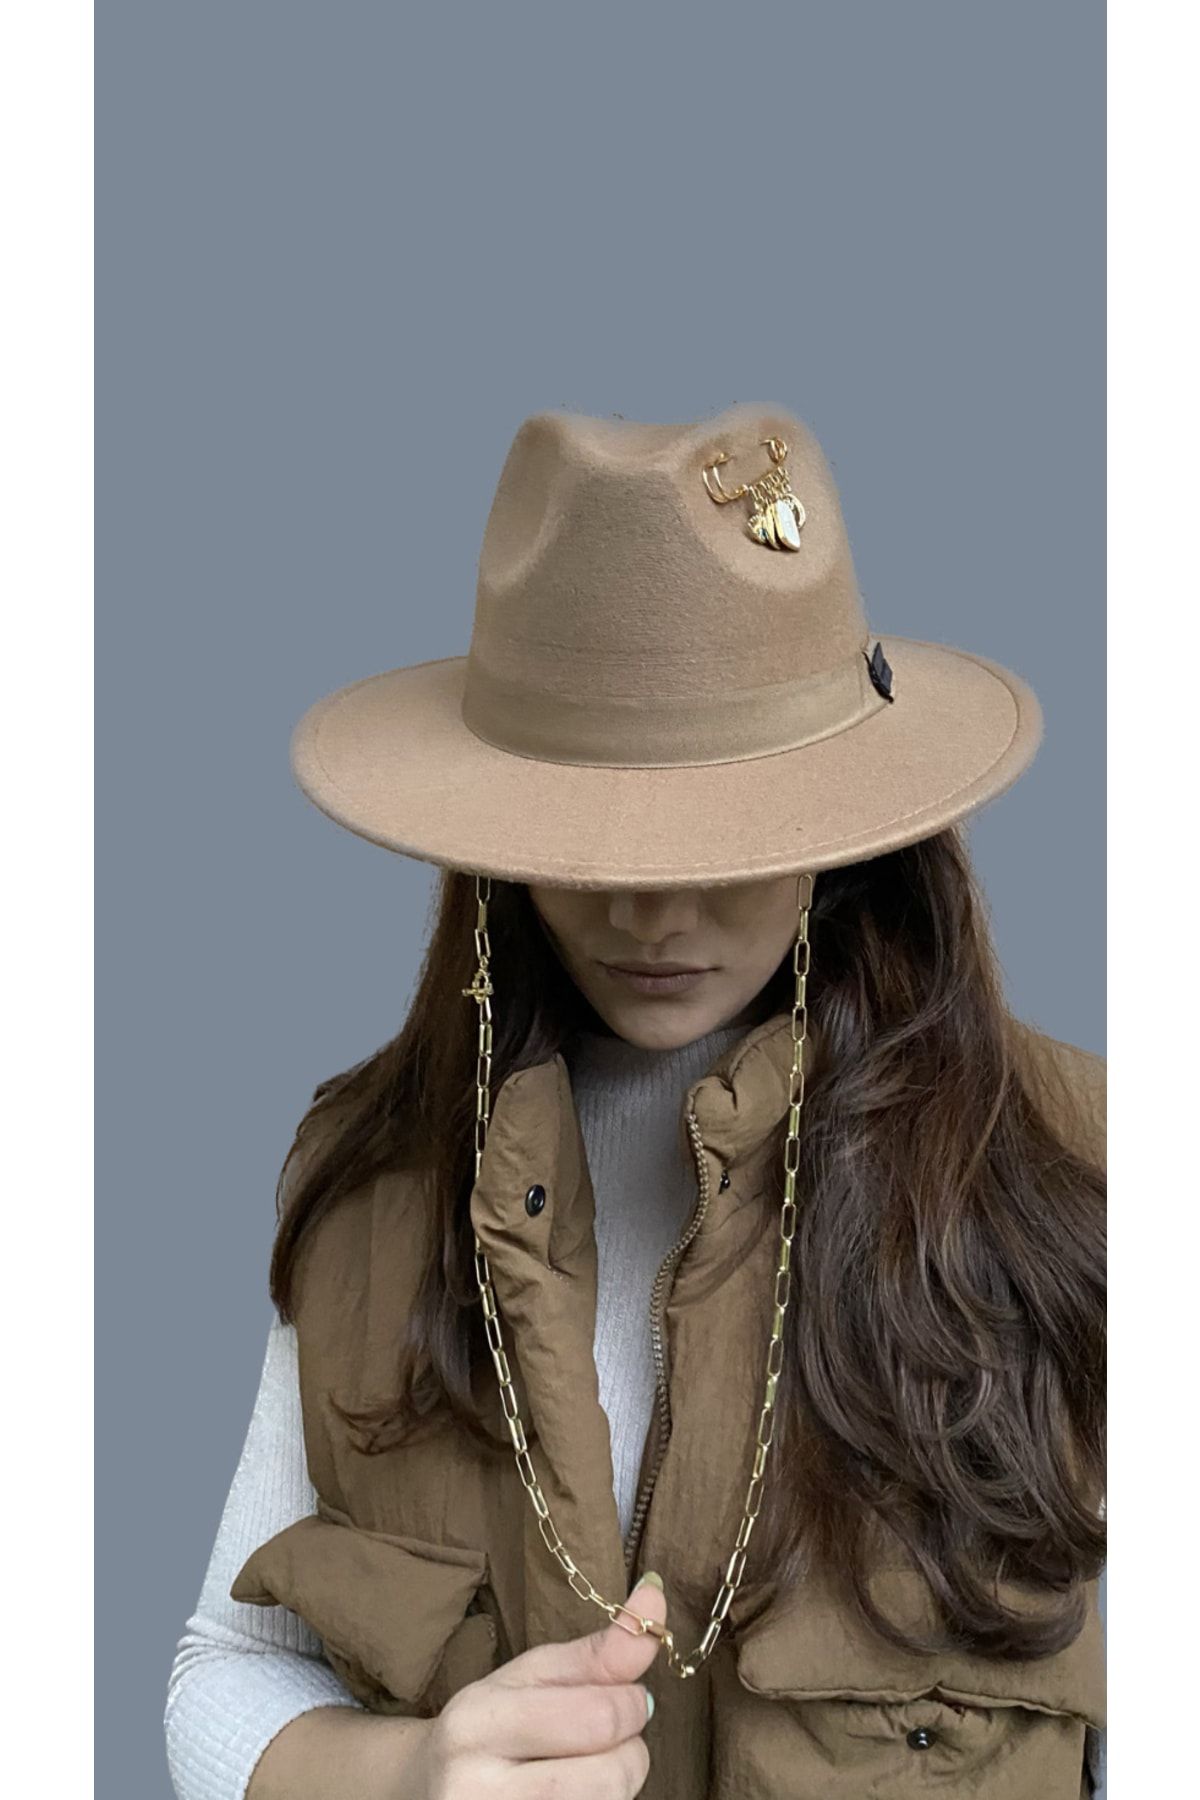 laviyonsa Kovboy Keçe Şapka Iğneli Aksesuar Yılbaşı Özel Koleksiyonu(İĞNELİ AKSESUARI DEĞİŞTİREBİLİRSİNİZ)